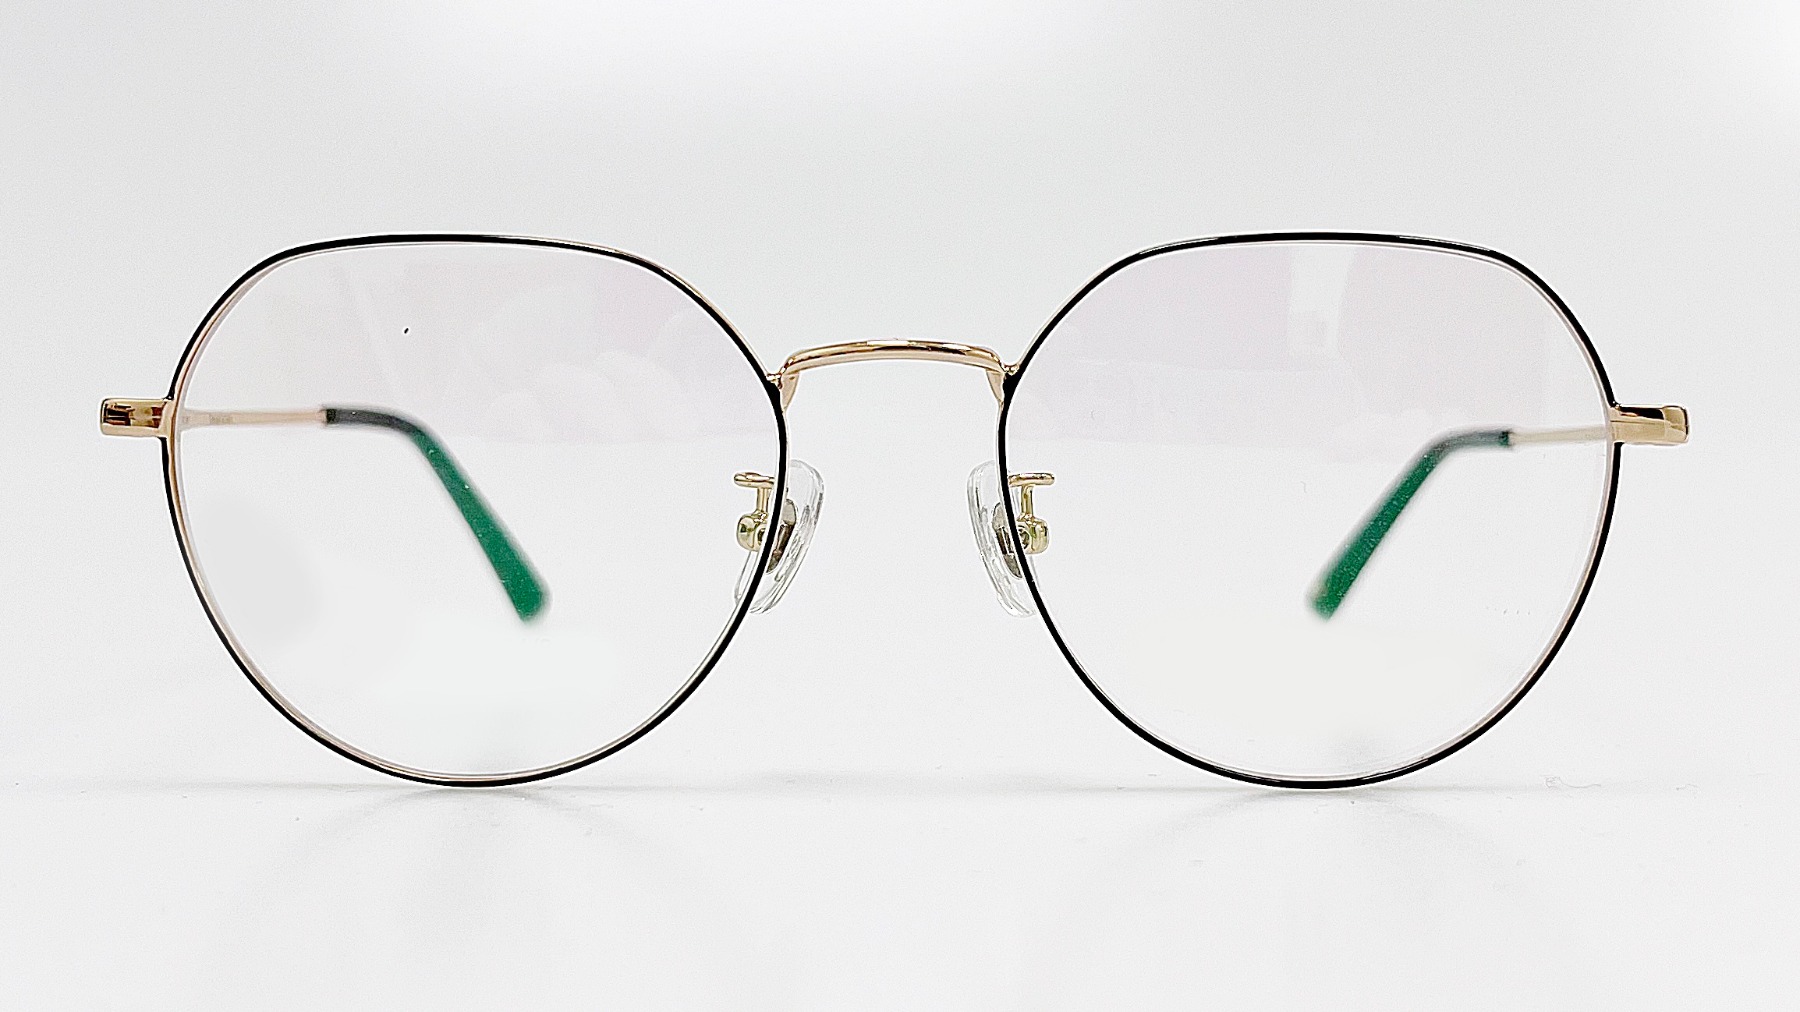 HELLEN KELLER-H23041, Korean glasses, sunglasses, eyeglasses, glasses